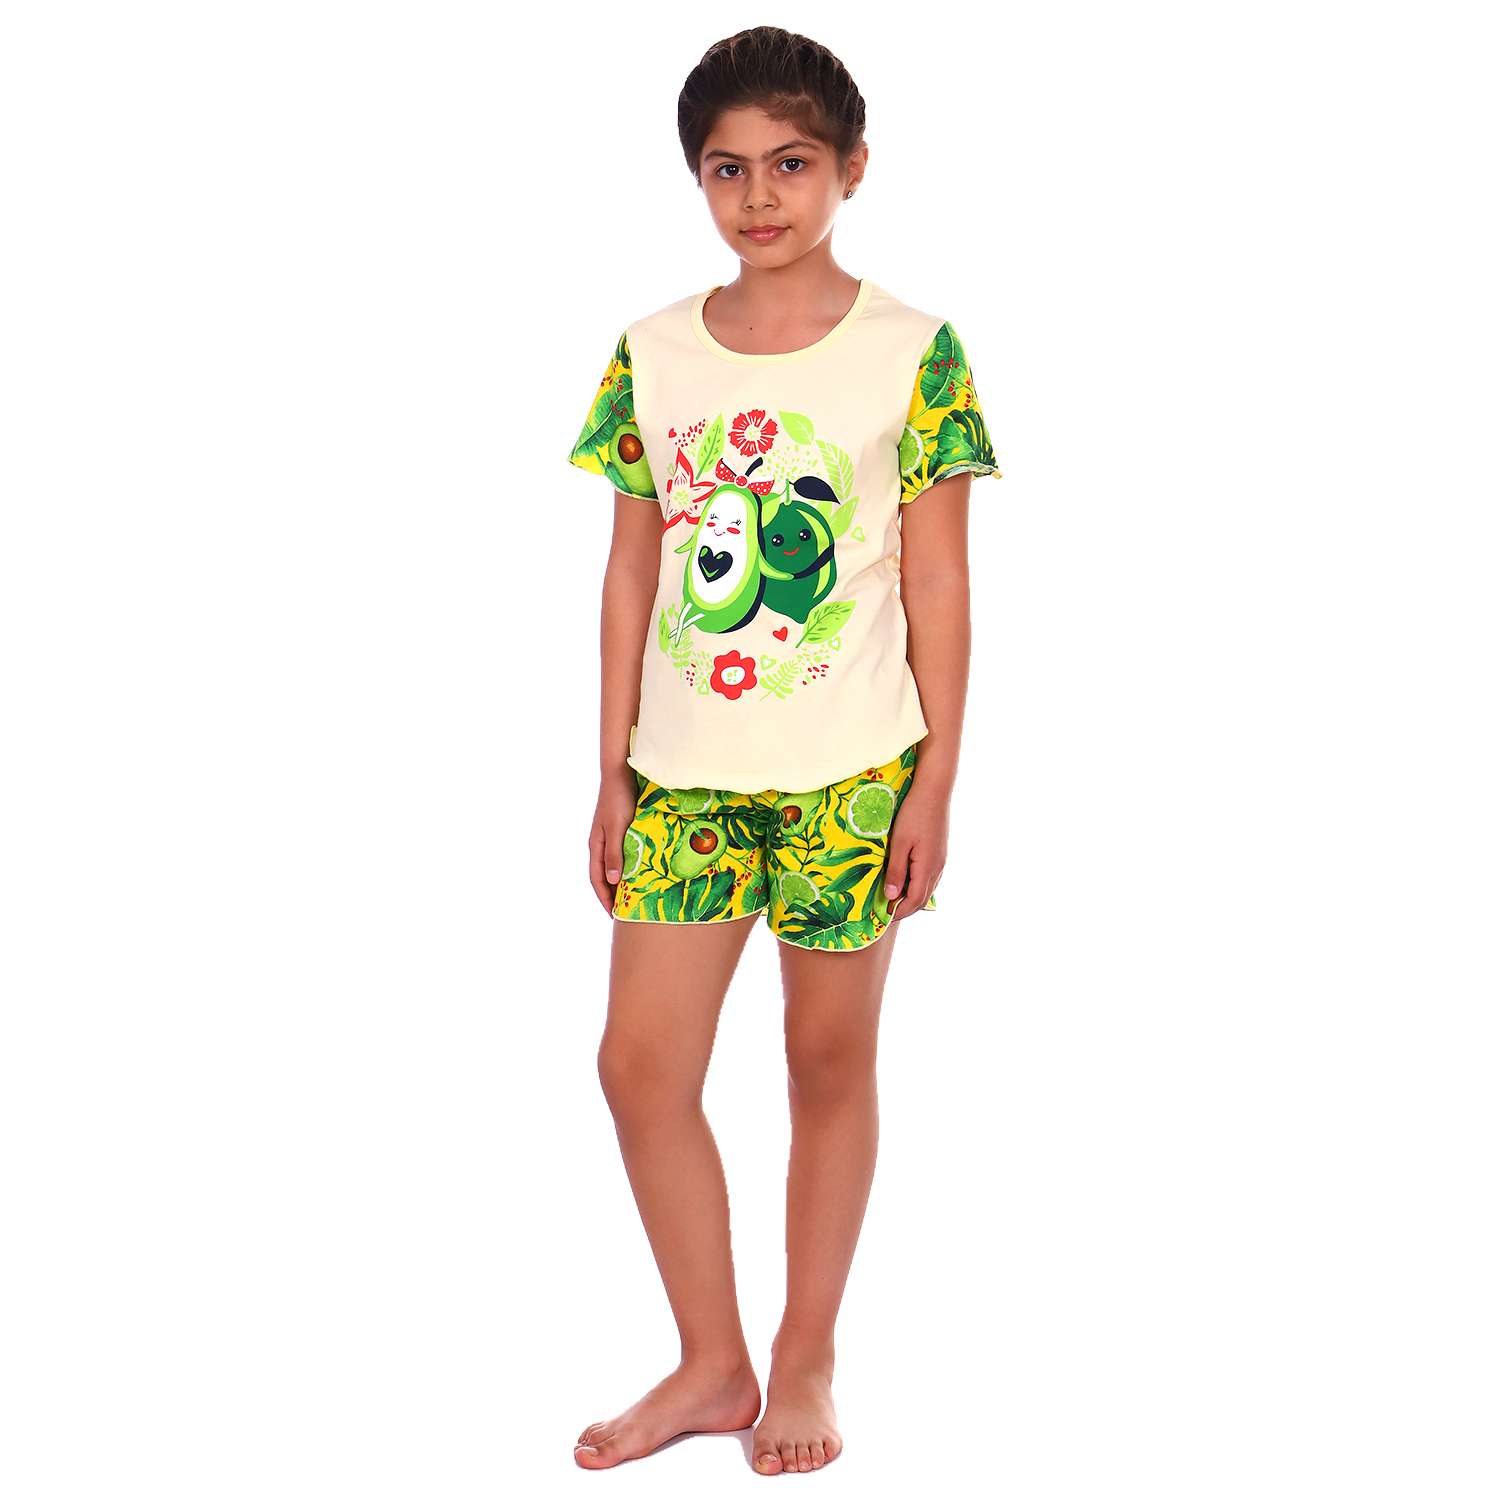 Пижама Детская Одежда 004К8Кр/желто-зеленый - фото 2